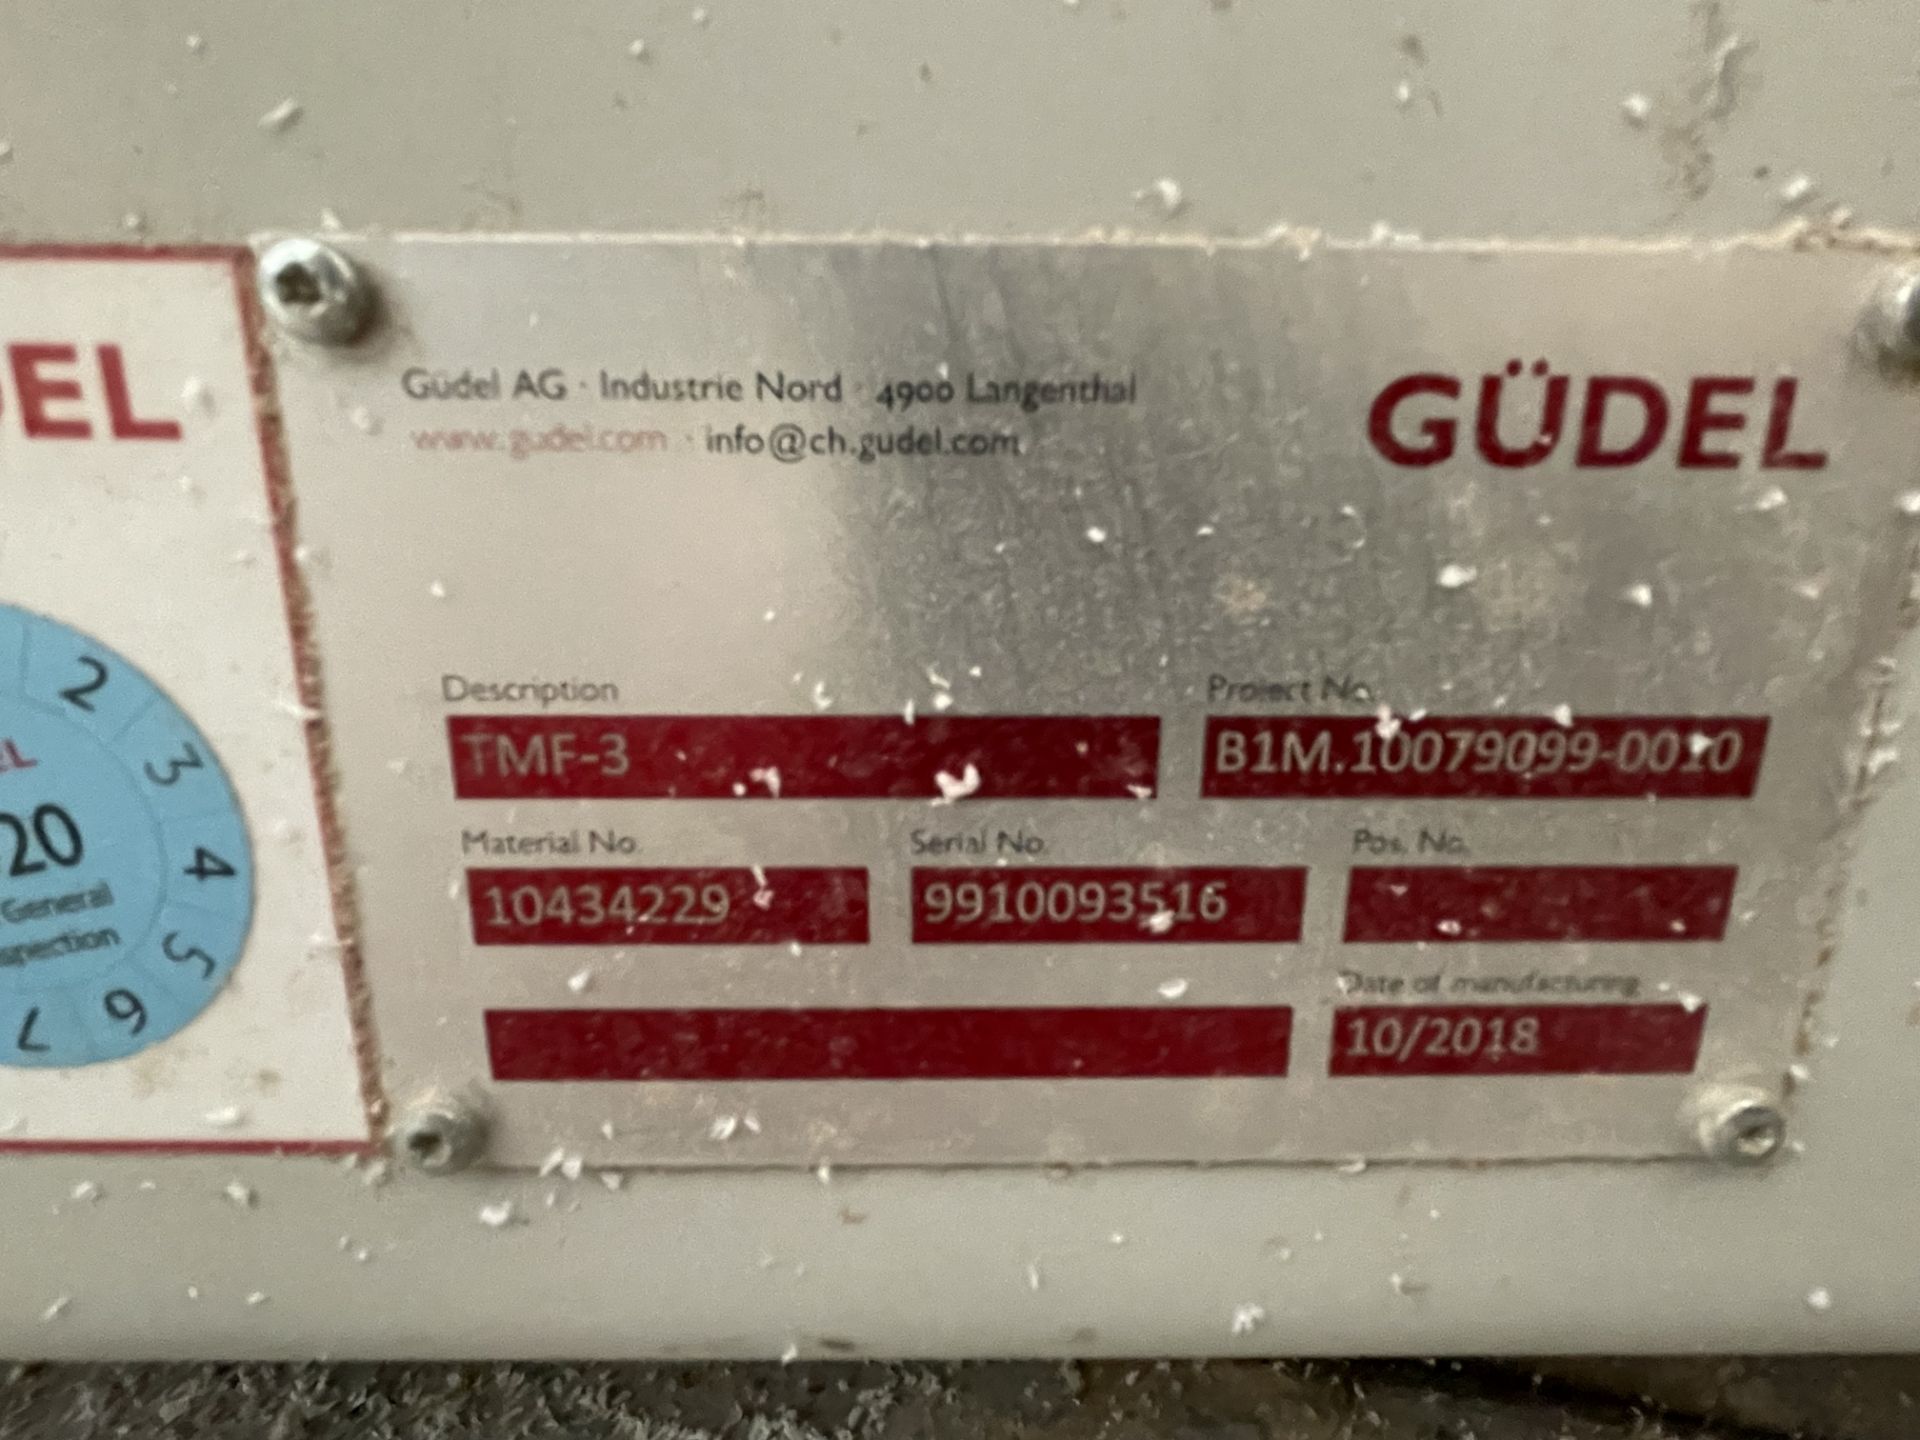 2018 Grudel TMF-3 c.11m Slide S/No. 9910093516 - Image 7 of 7